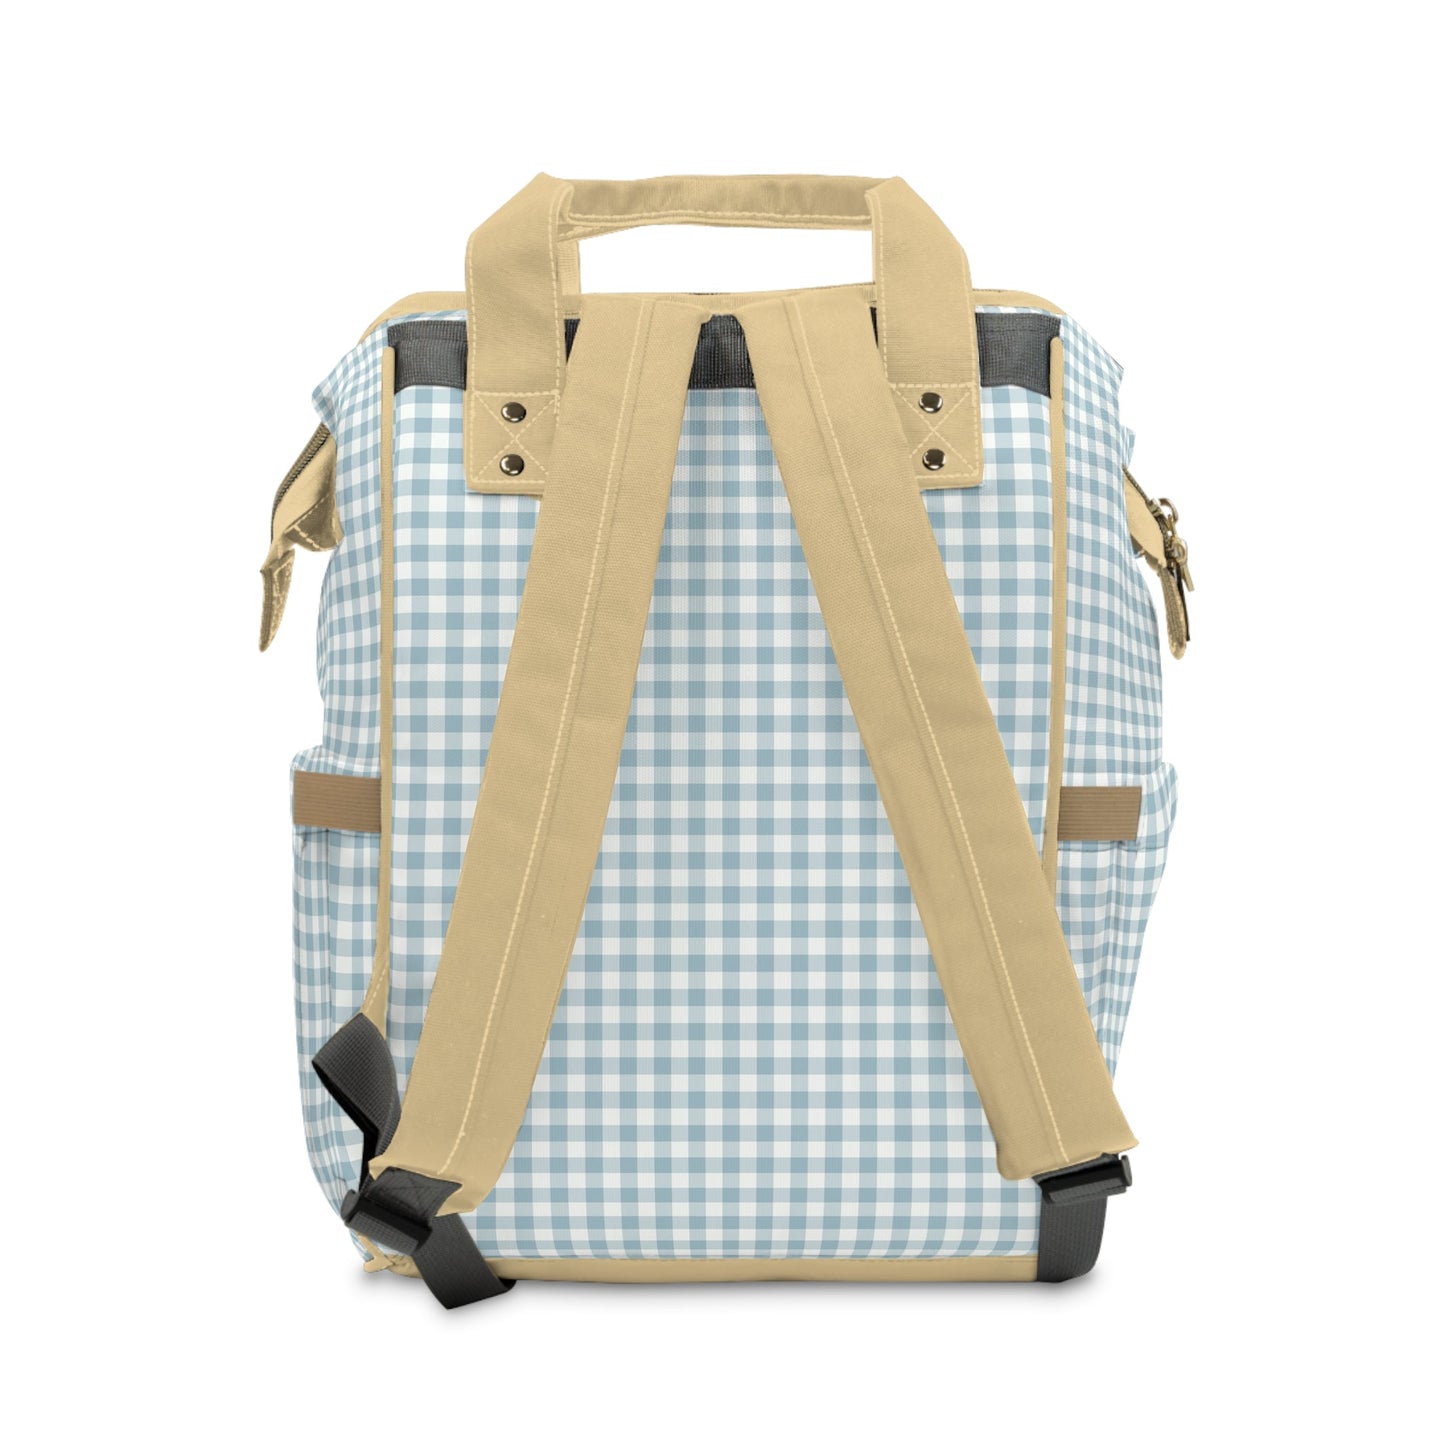 Backpack Bag in Blue Gingham - Modern Kastle Shop